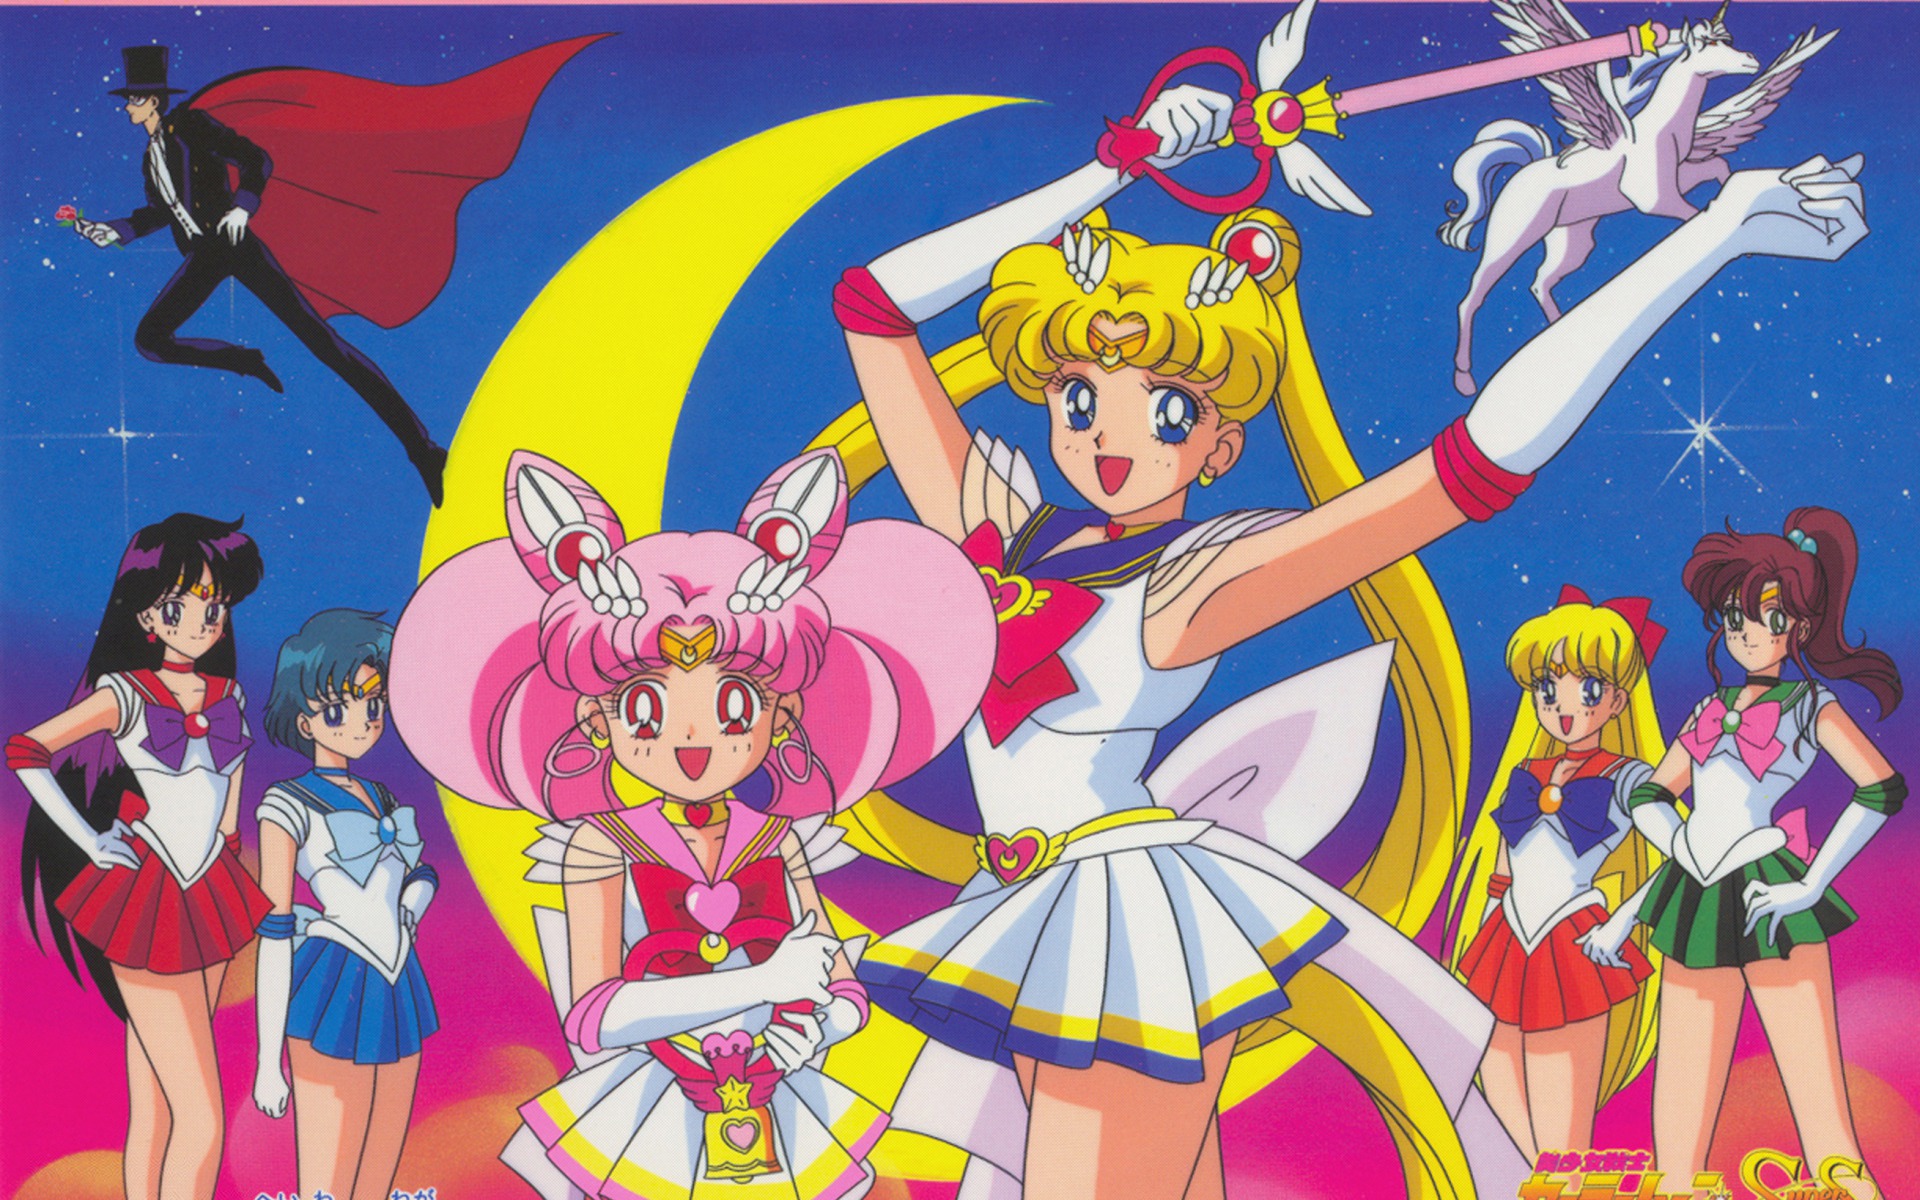 Sailor Moon Cosmos', novo filme, é anunciado para 2023